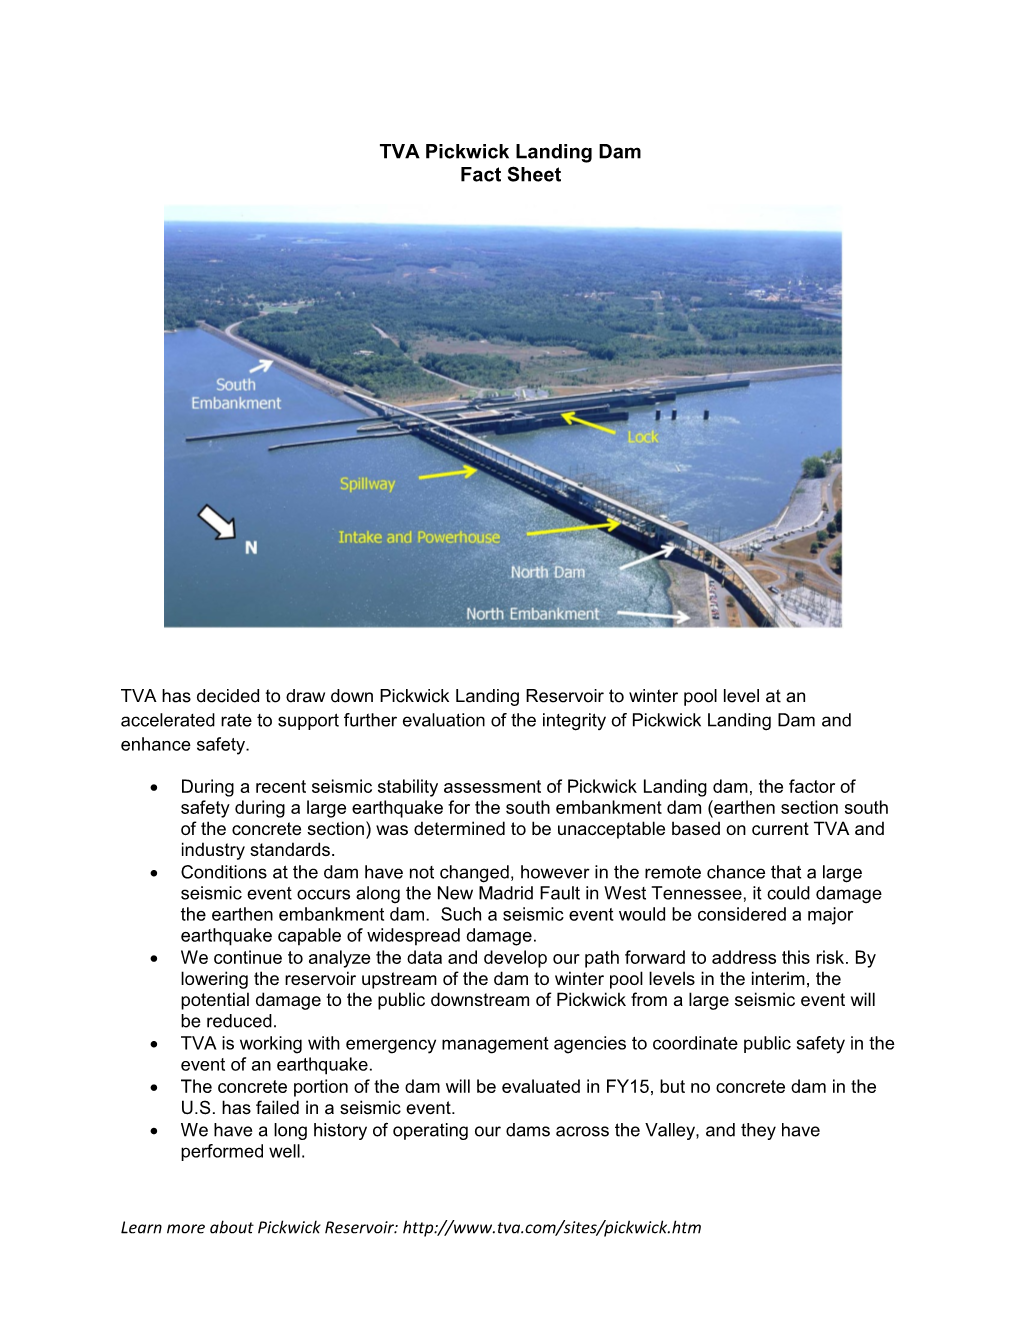 TVA Pickwick Landing Dam Fact Sheet